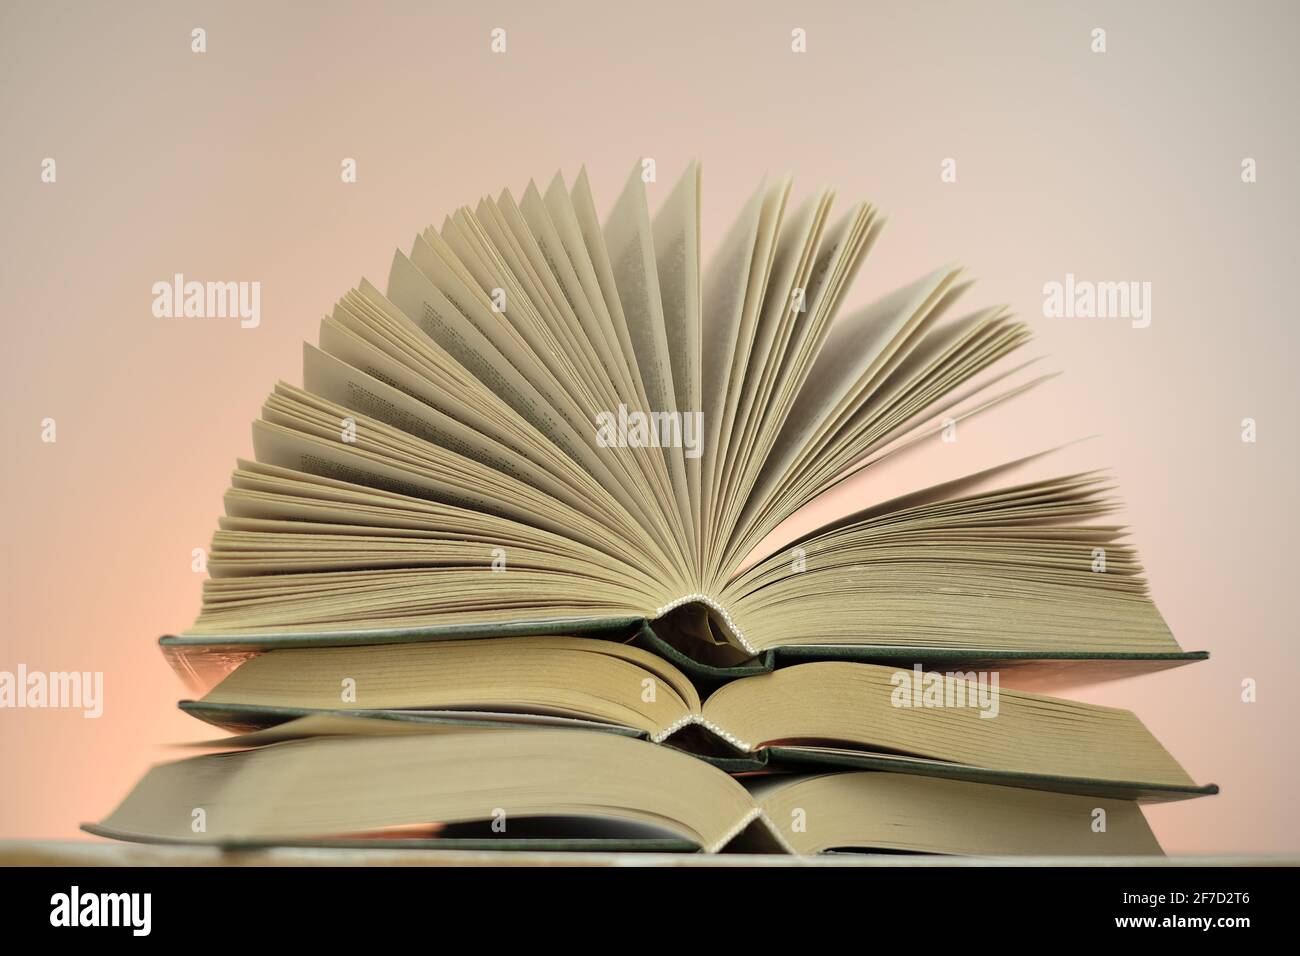 Lettura libri e letteratura.Open libri stack set su uno sfondo rosa. Studio e concetto di istruzione. Primo piano del libro pages.Learning e conoscenza Foto Stock